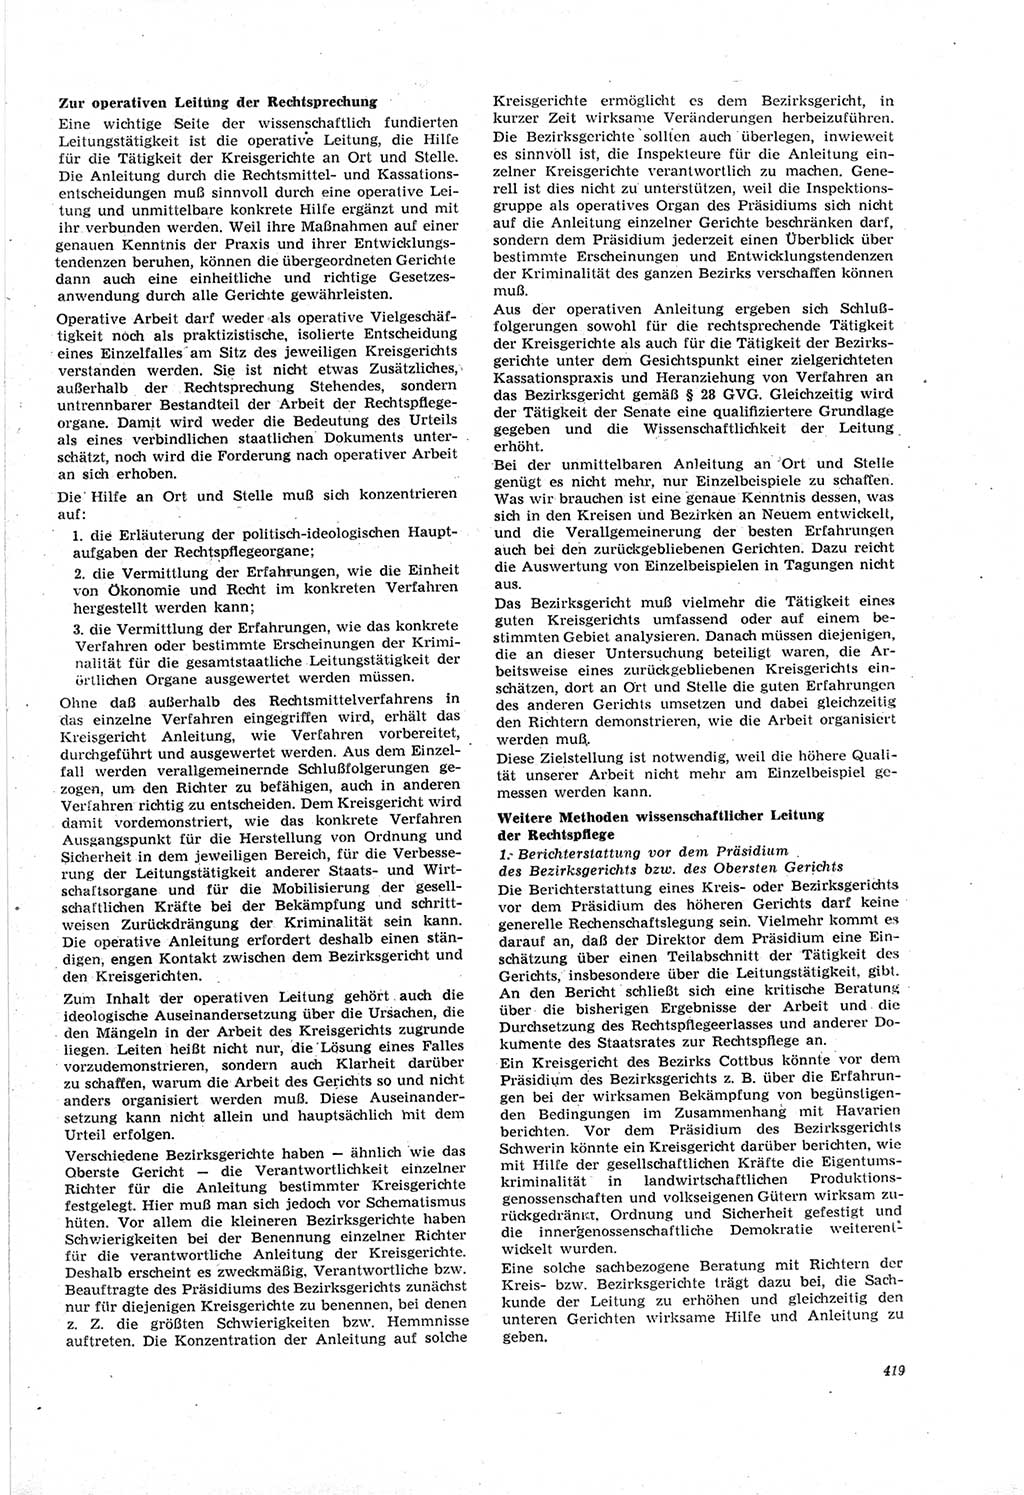 Neue Justiz (NJ), Zeitschrift für Recht und Rechtswissenschaft [Deutsche Demokratische Republik (DDR)], 18. Jahrgang 1964, Seite 419 (NJ DDR 1964, S. 419)